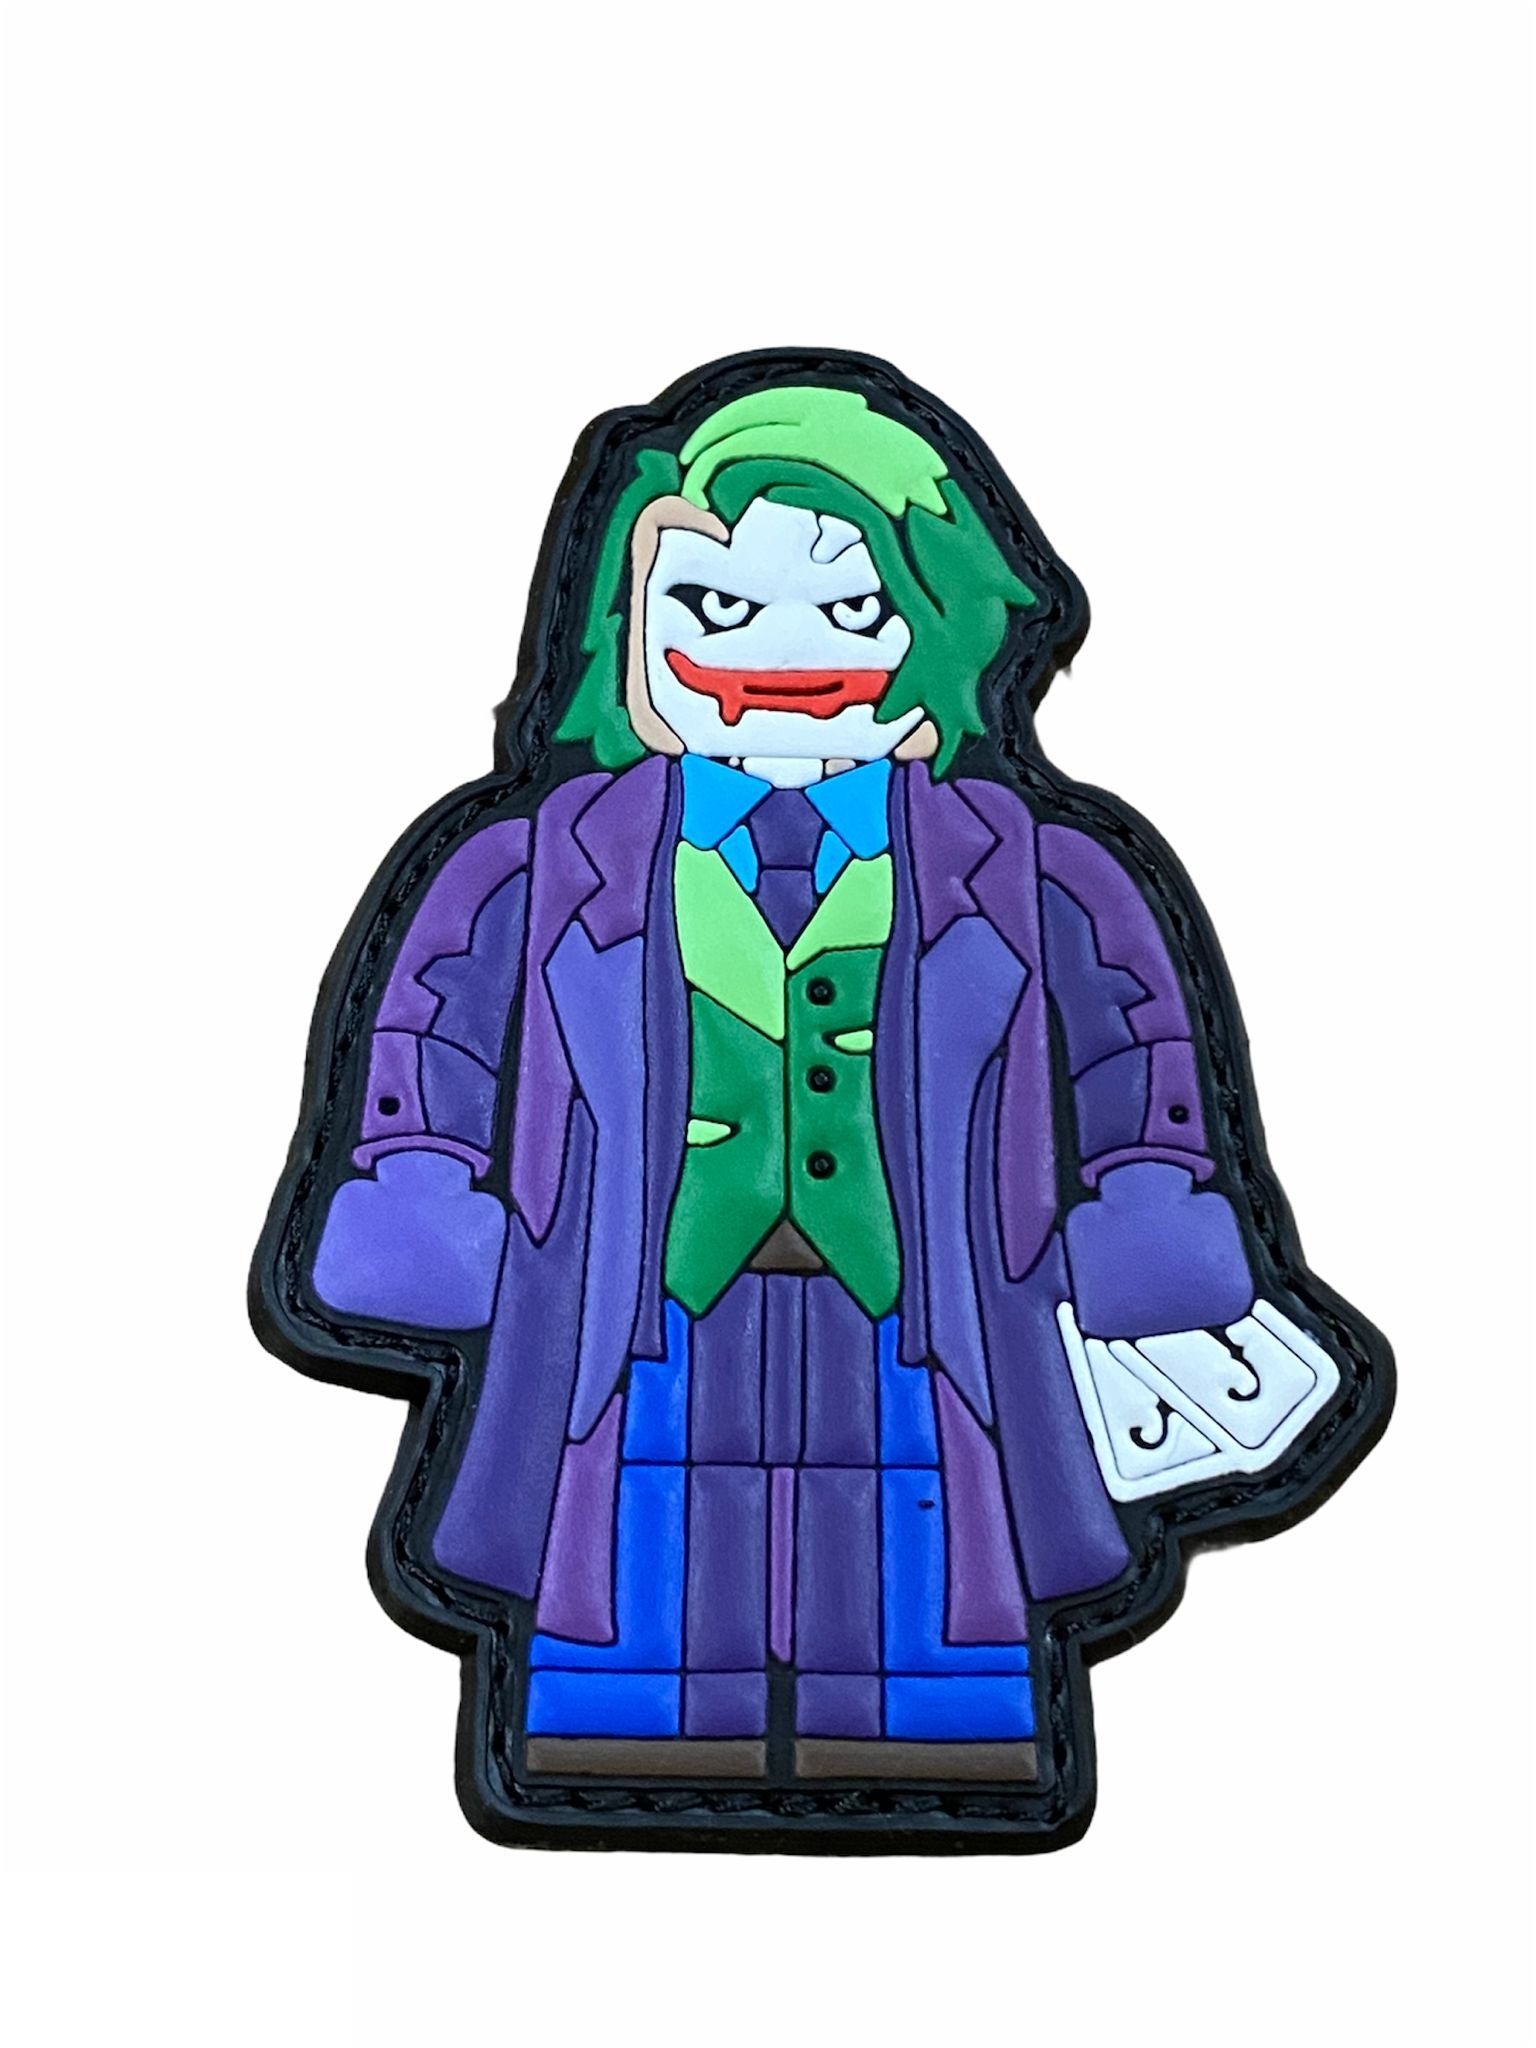 Patch Lego Joker